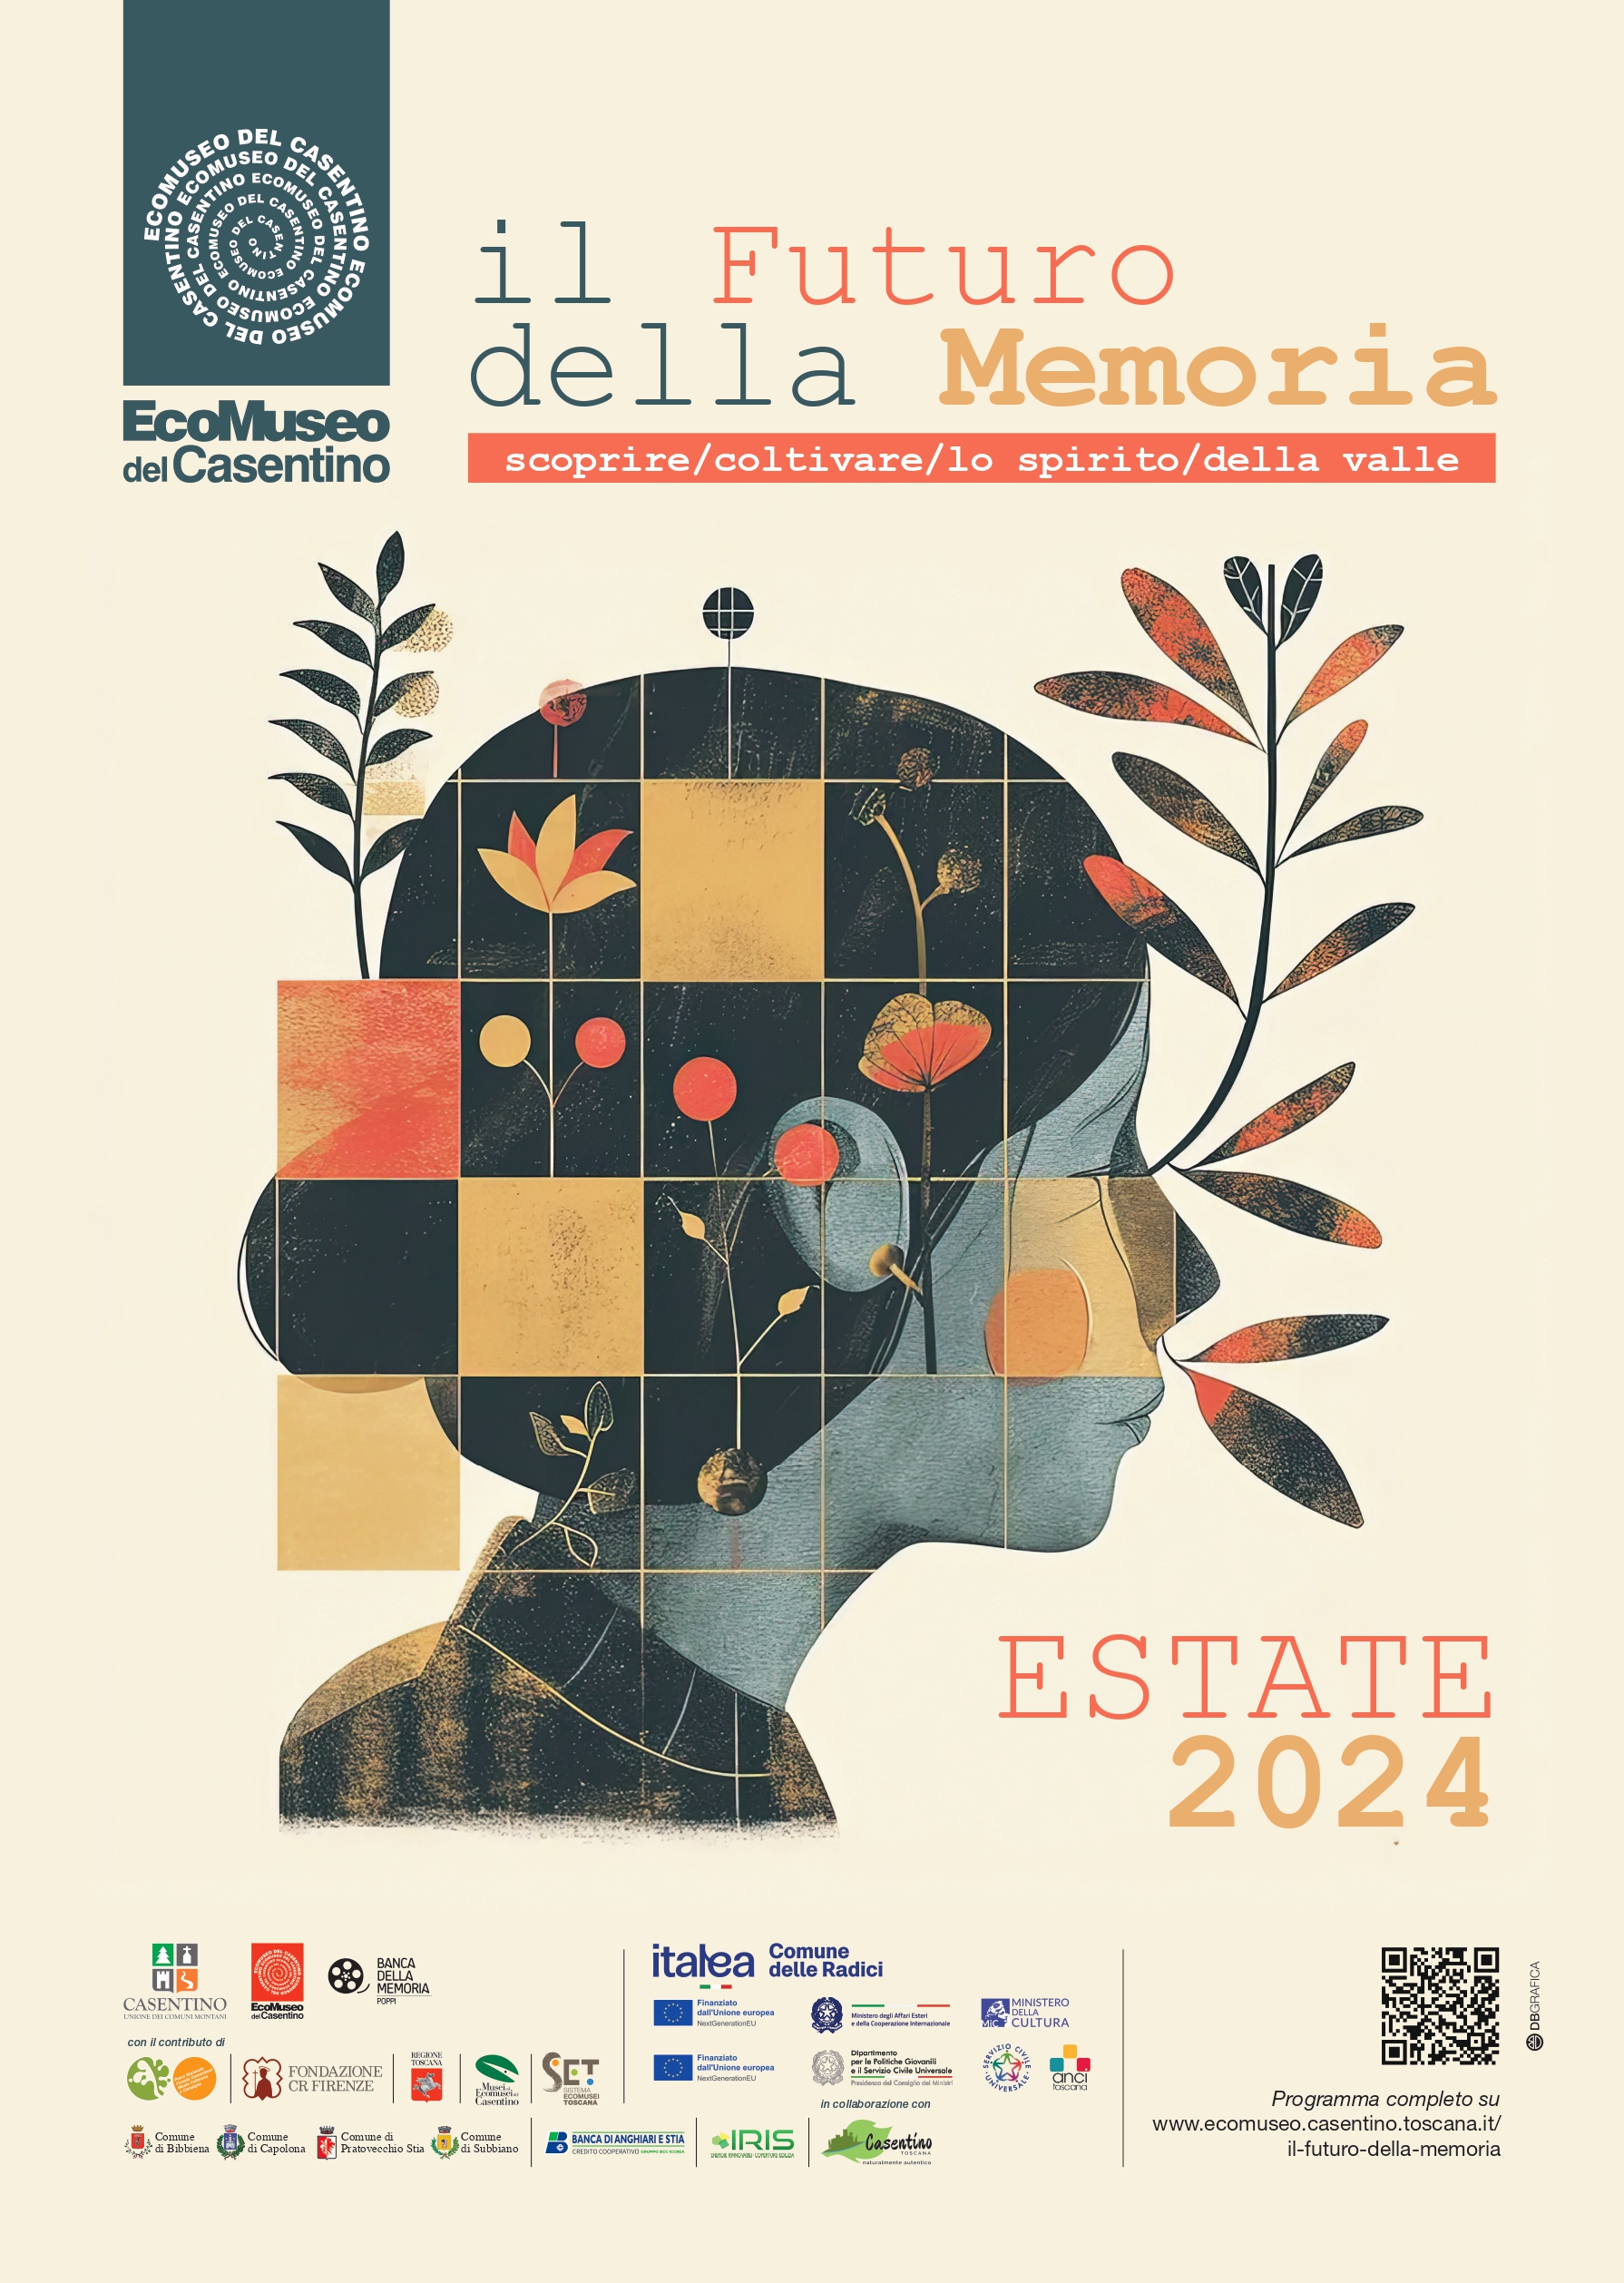 Il Futuro della Memoria: il calendario estivo delle attività dell’Ecomuseo del Casentino